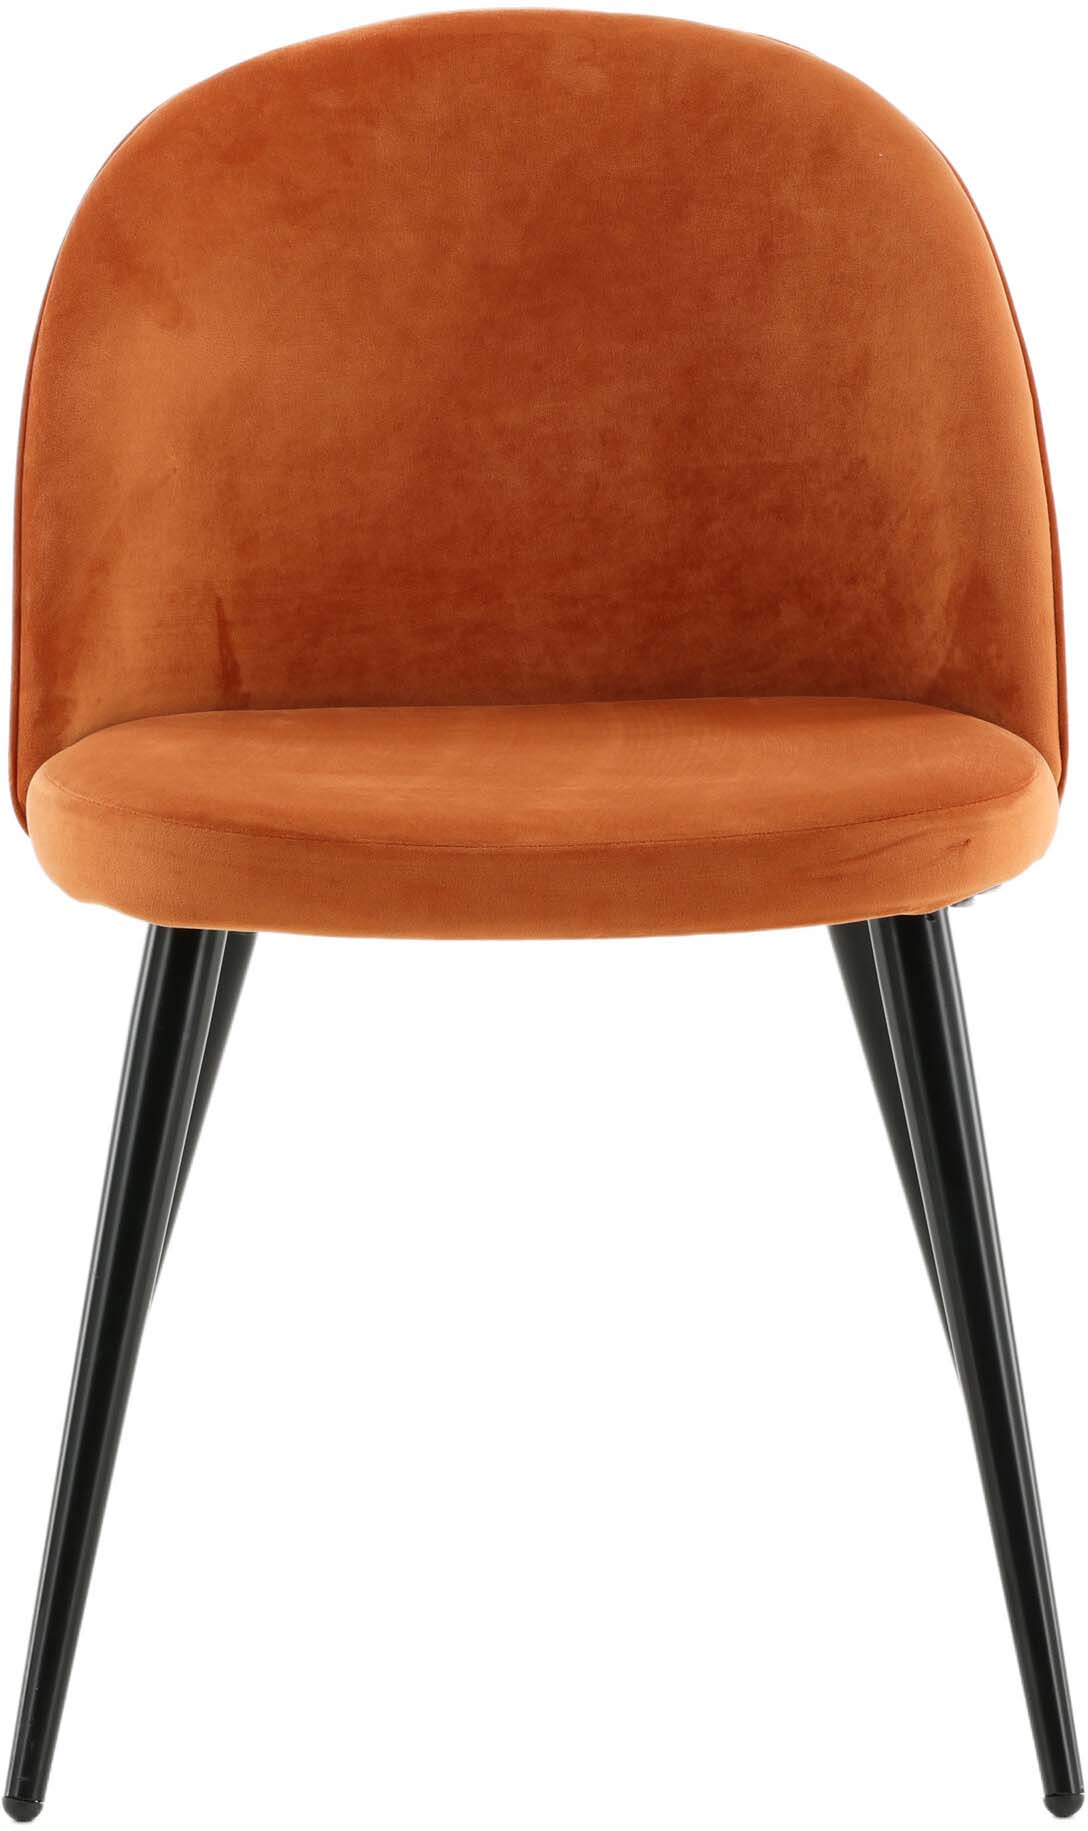 Velvet Matstol Stuhl in Rostiges Orange / Schwarz präsentiert im Onlineshop von KAQTU Design AG. Schalenstuhl ist von Venture Home